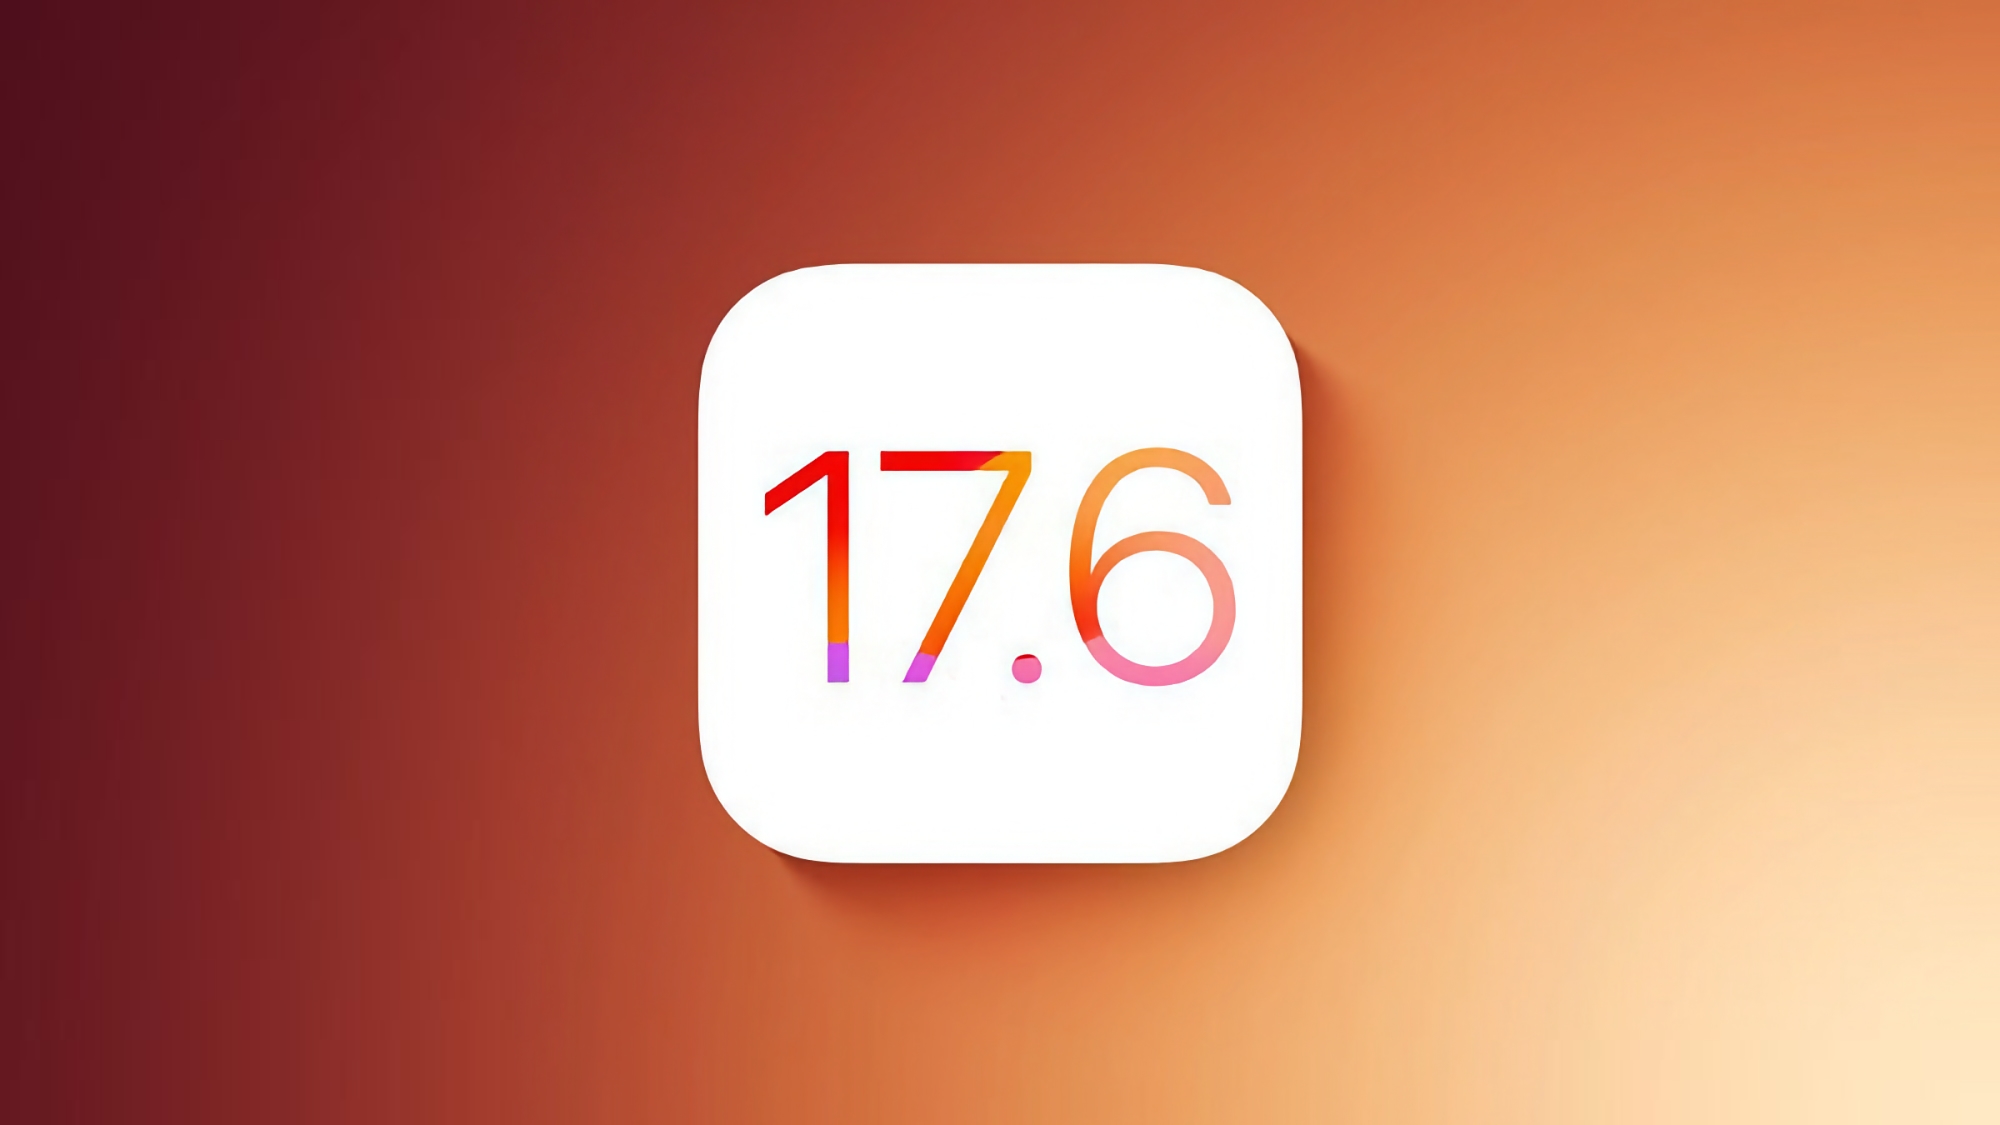 Apple wydało stabilną wersję iOS 17.6 z poprawkami błędów i ulepszonymi zabezpieczeniami